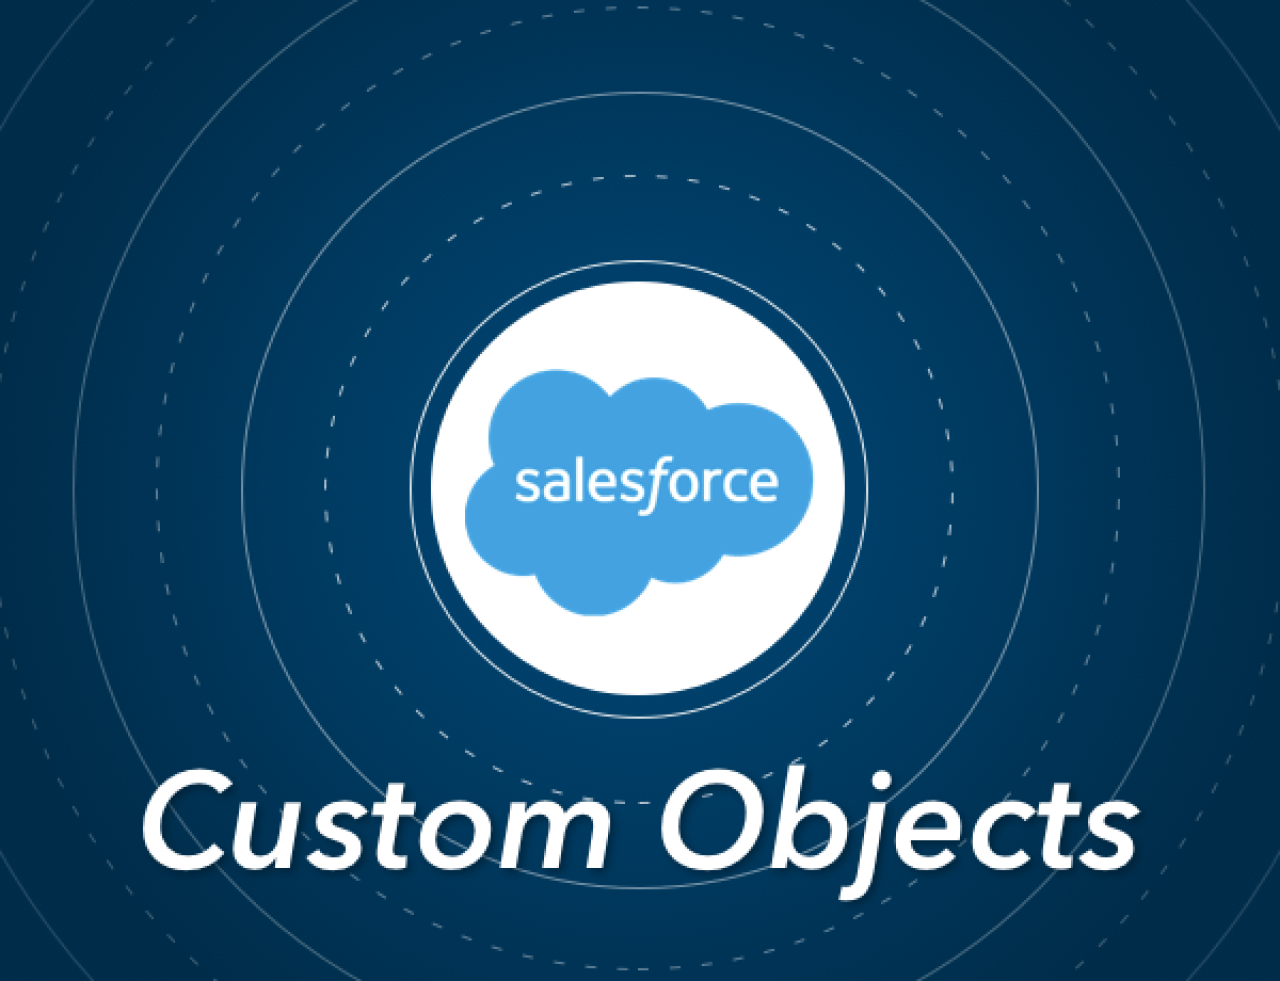 salesforce custom objects.